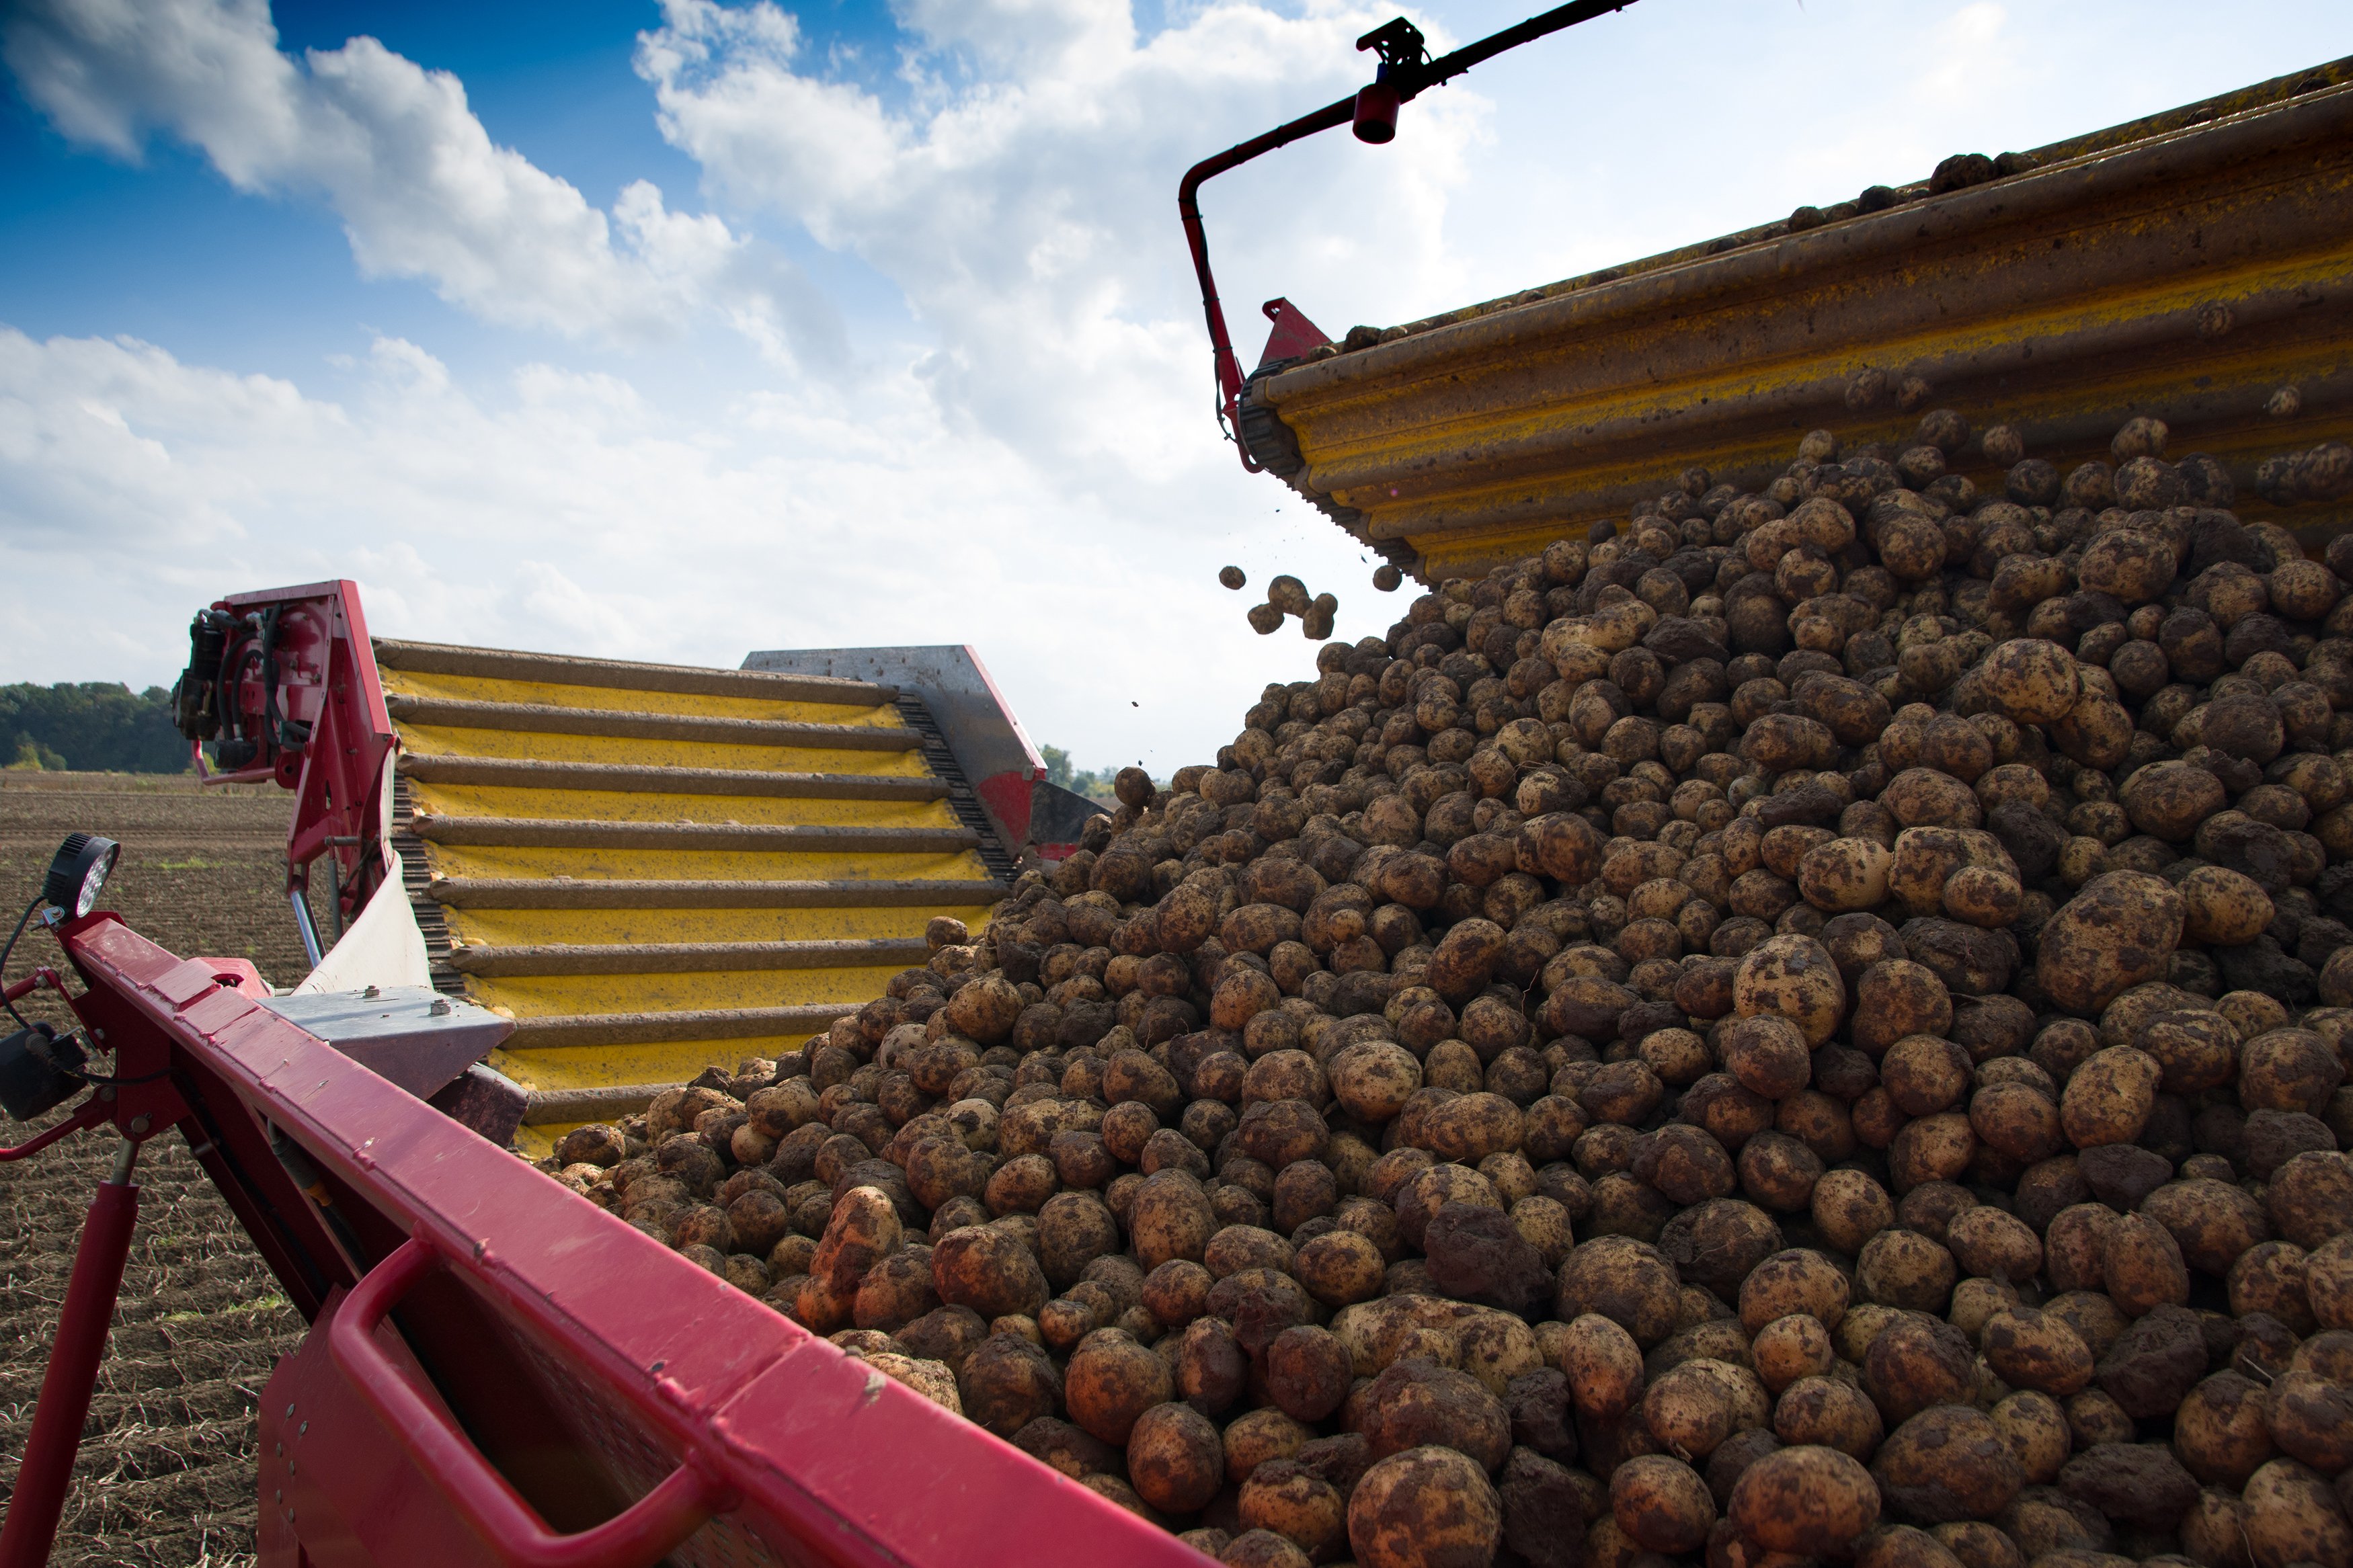 harvested-potatoes-2021-10-11-23-01-17-utc.jpg